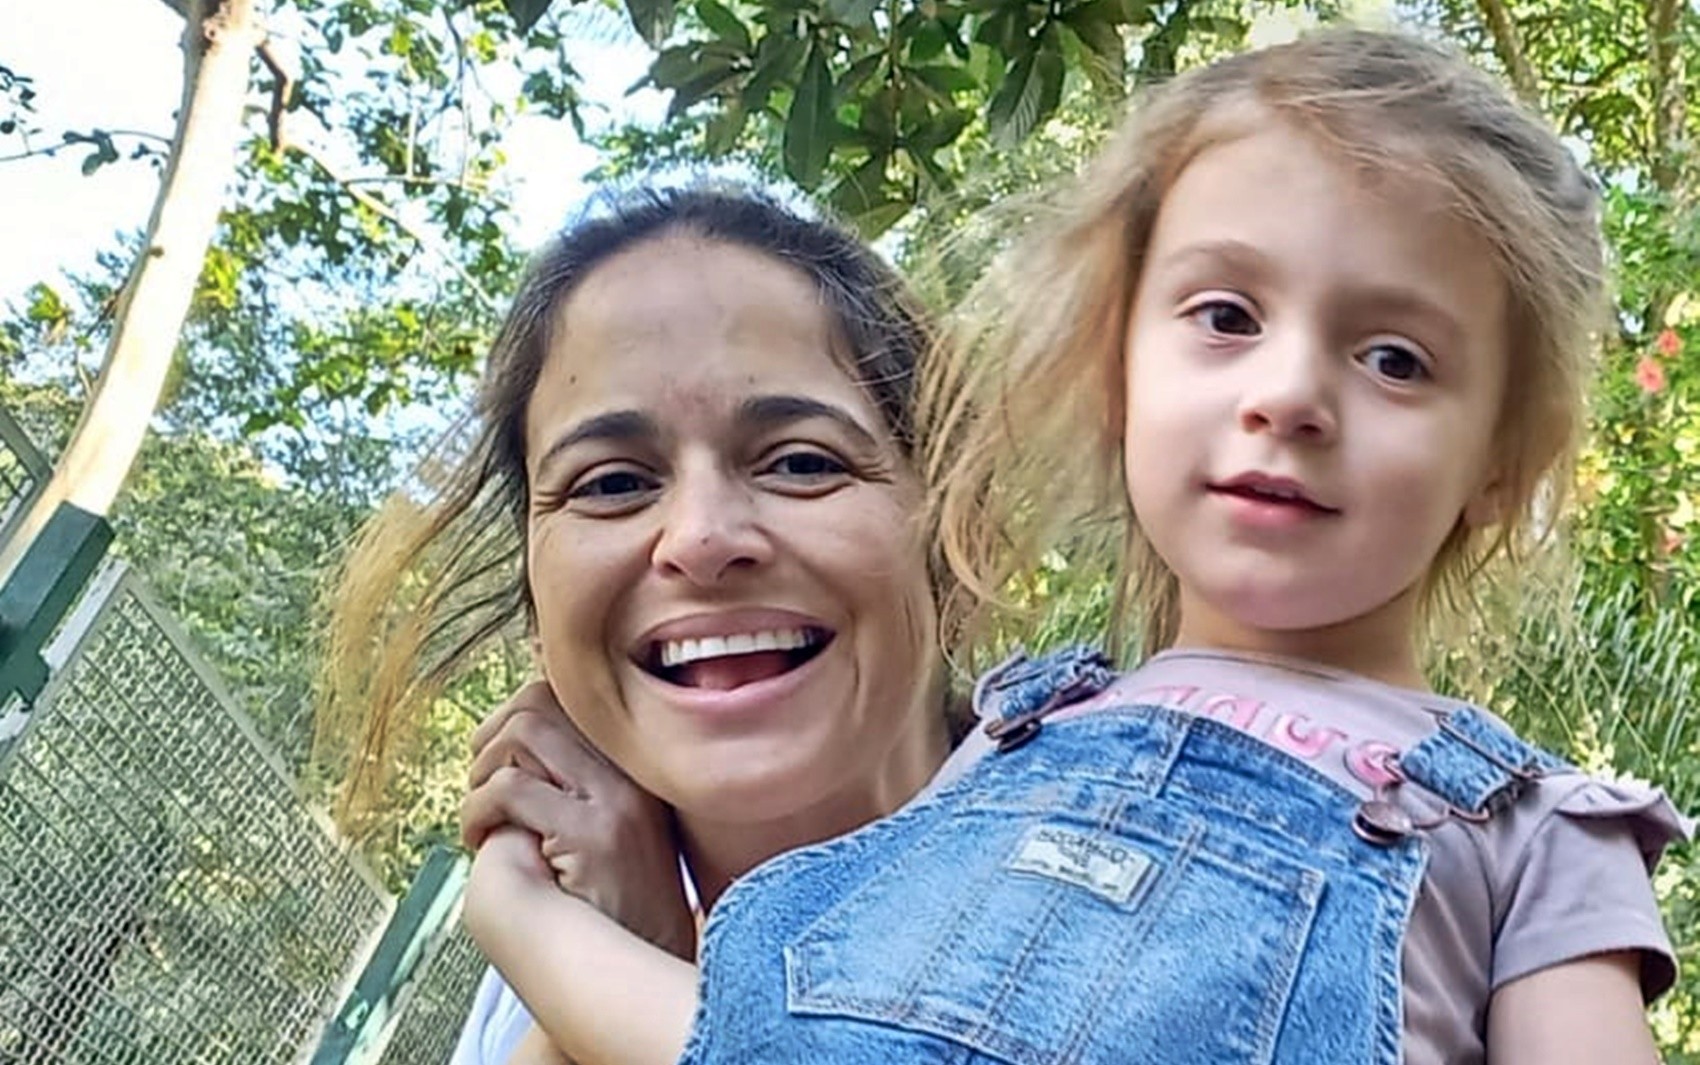 Empresária usa canções para ajudar filha autista a se comunicar: 'Ser mãe é ser insubstituível'